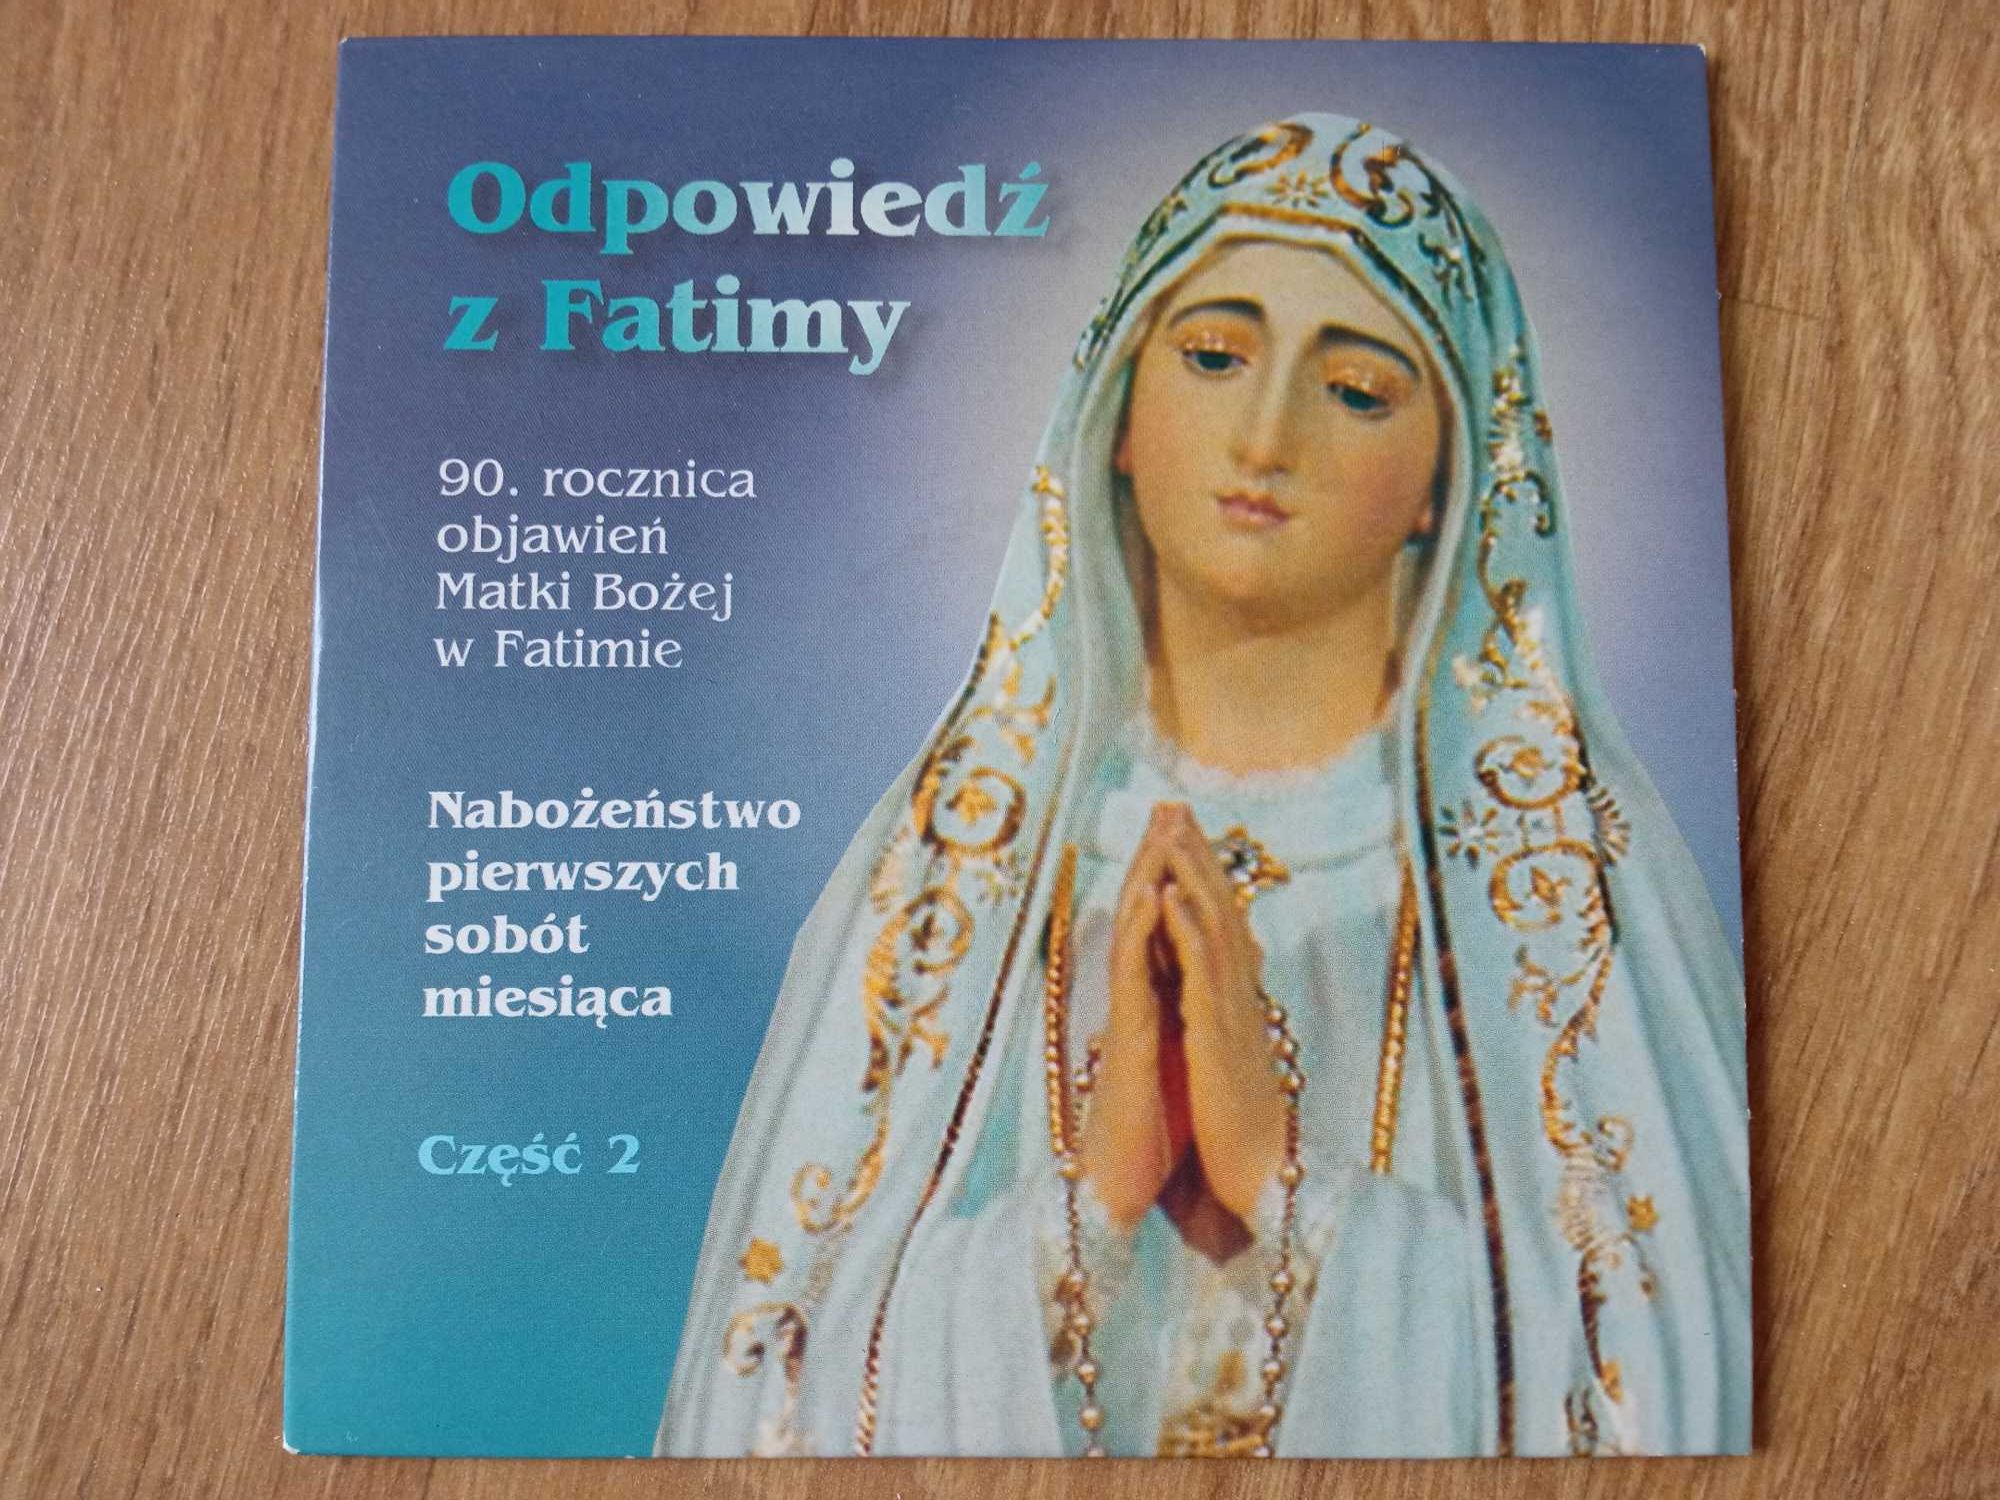 Odpowiedź z Fatimy Część 2 Płyta CD